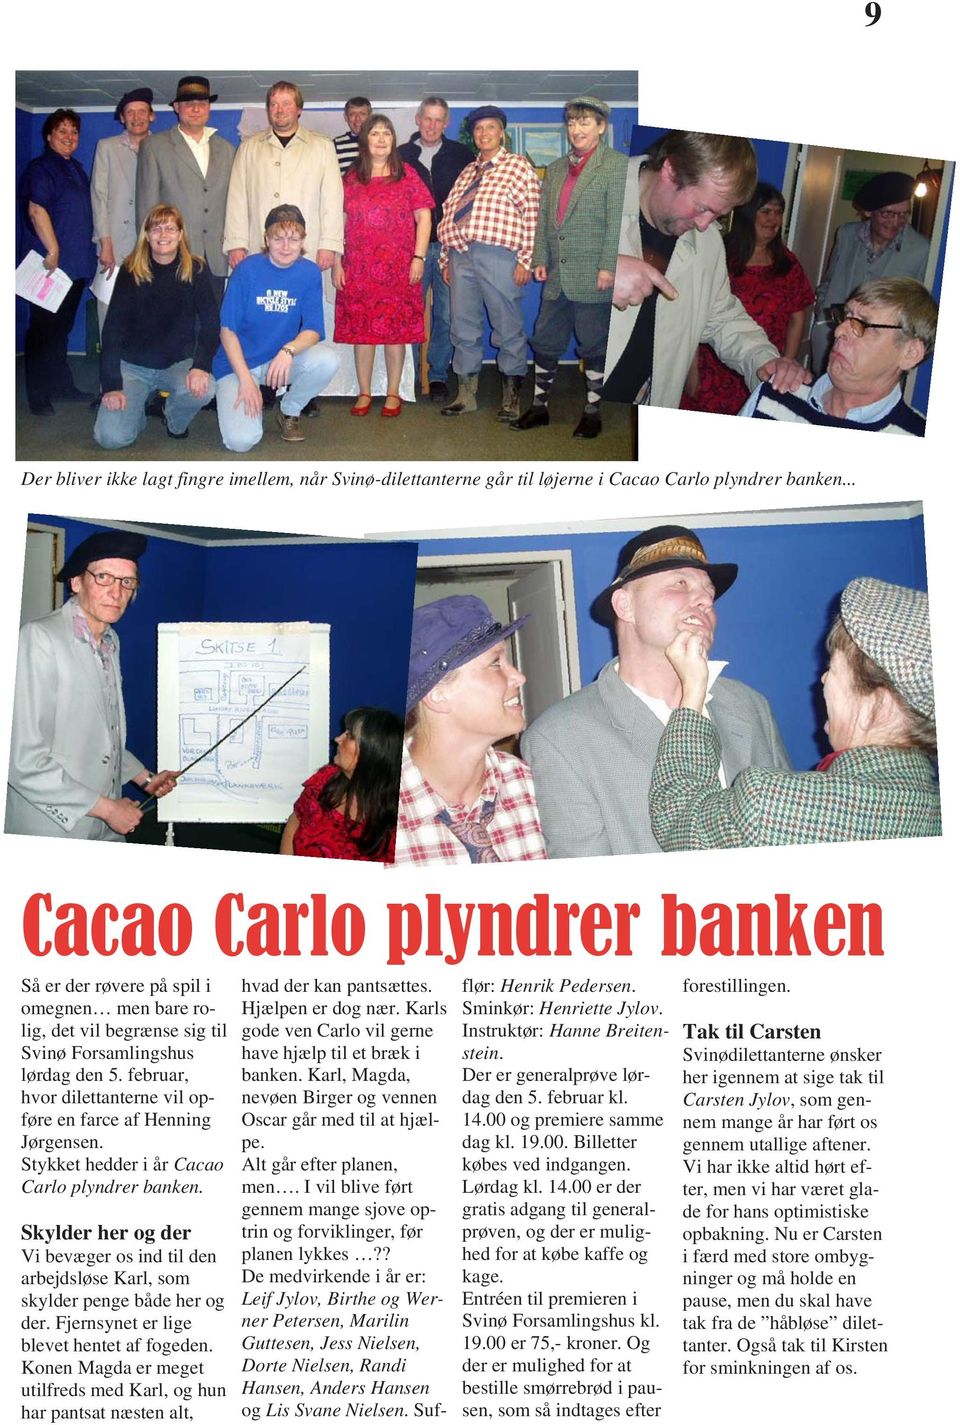 februar, hvor dilettanterne vil opføre en farce af Henning Jørgensen. Stykket hedder i år Cacao Carlo plyndrer banken.